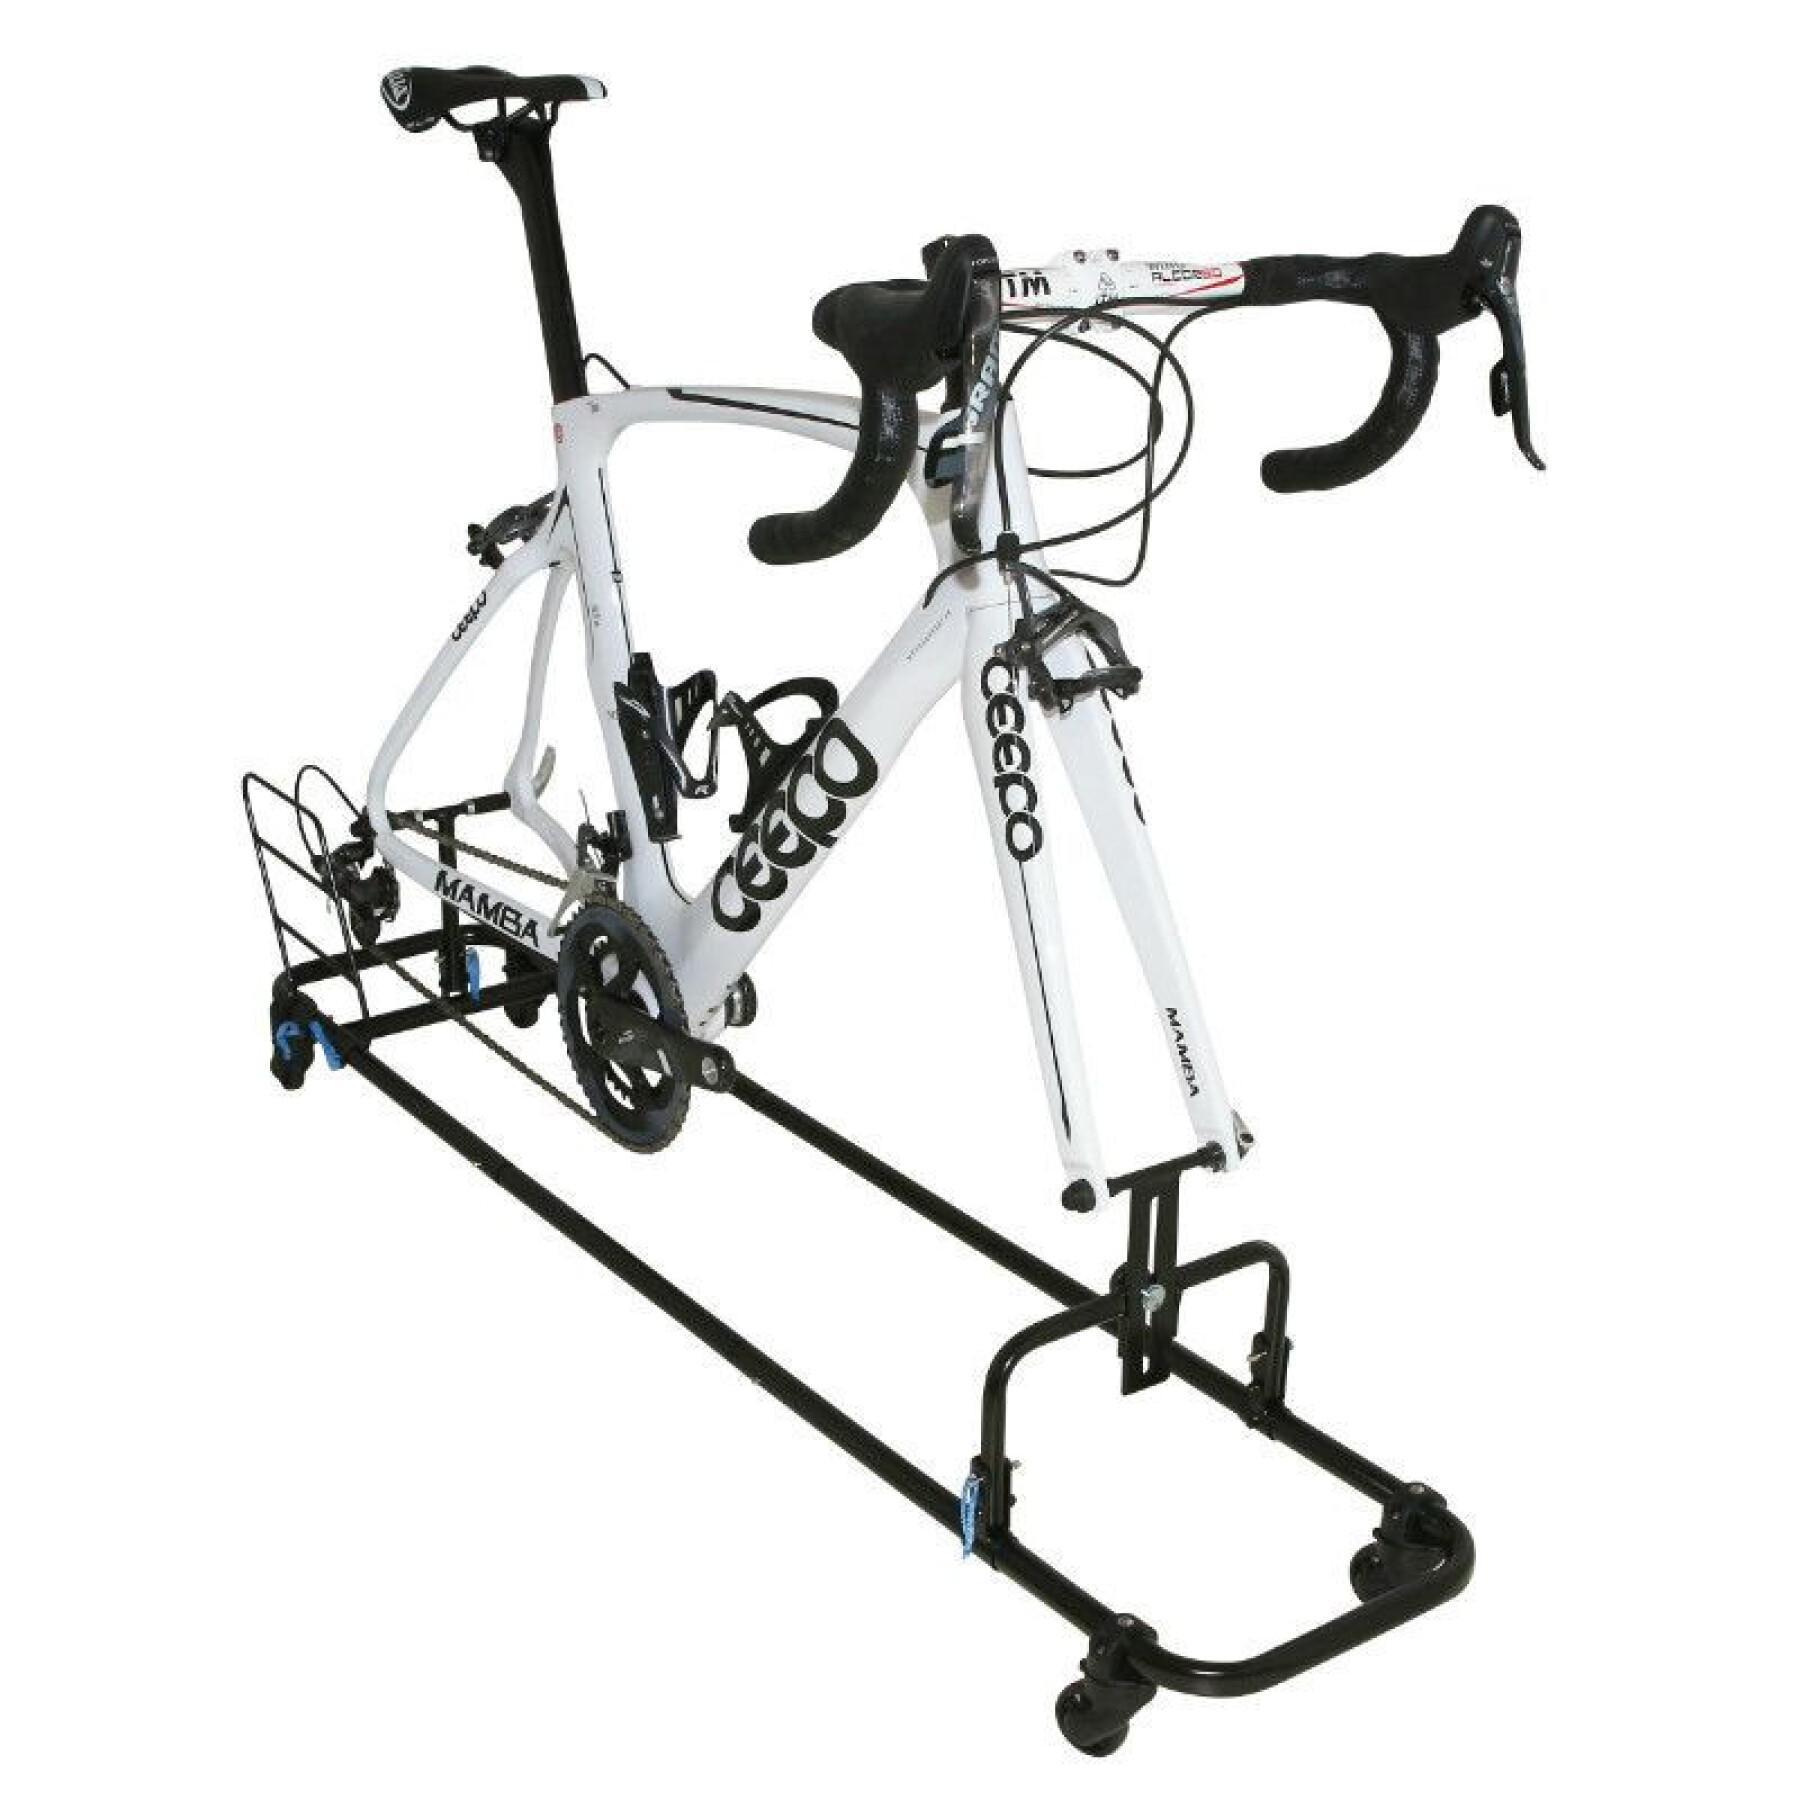 Maleta de transporte para bicicletas de lona negra con 1 compartimento para la rueda delantera P2R protections gonflables exterieures compatibles 26-27.5-29-700